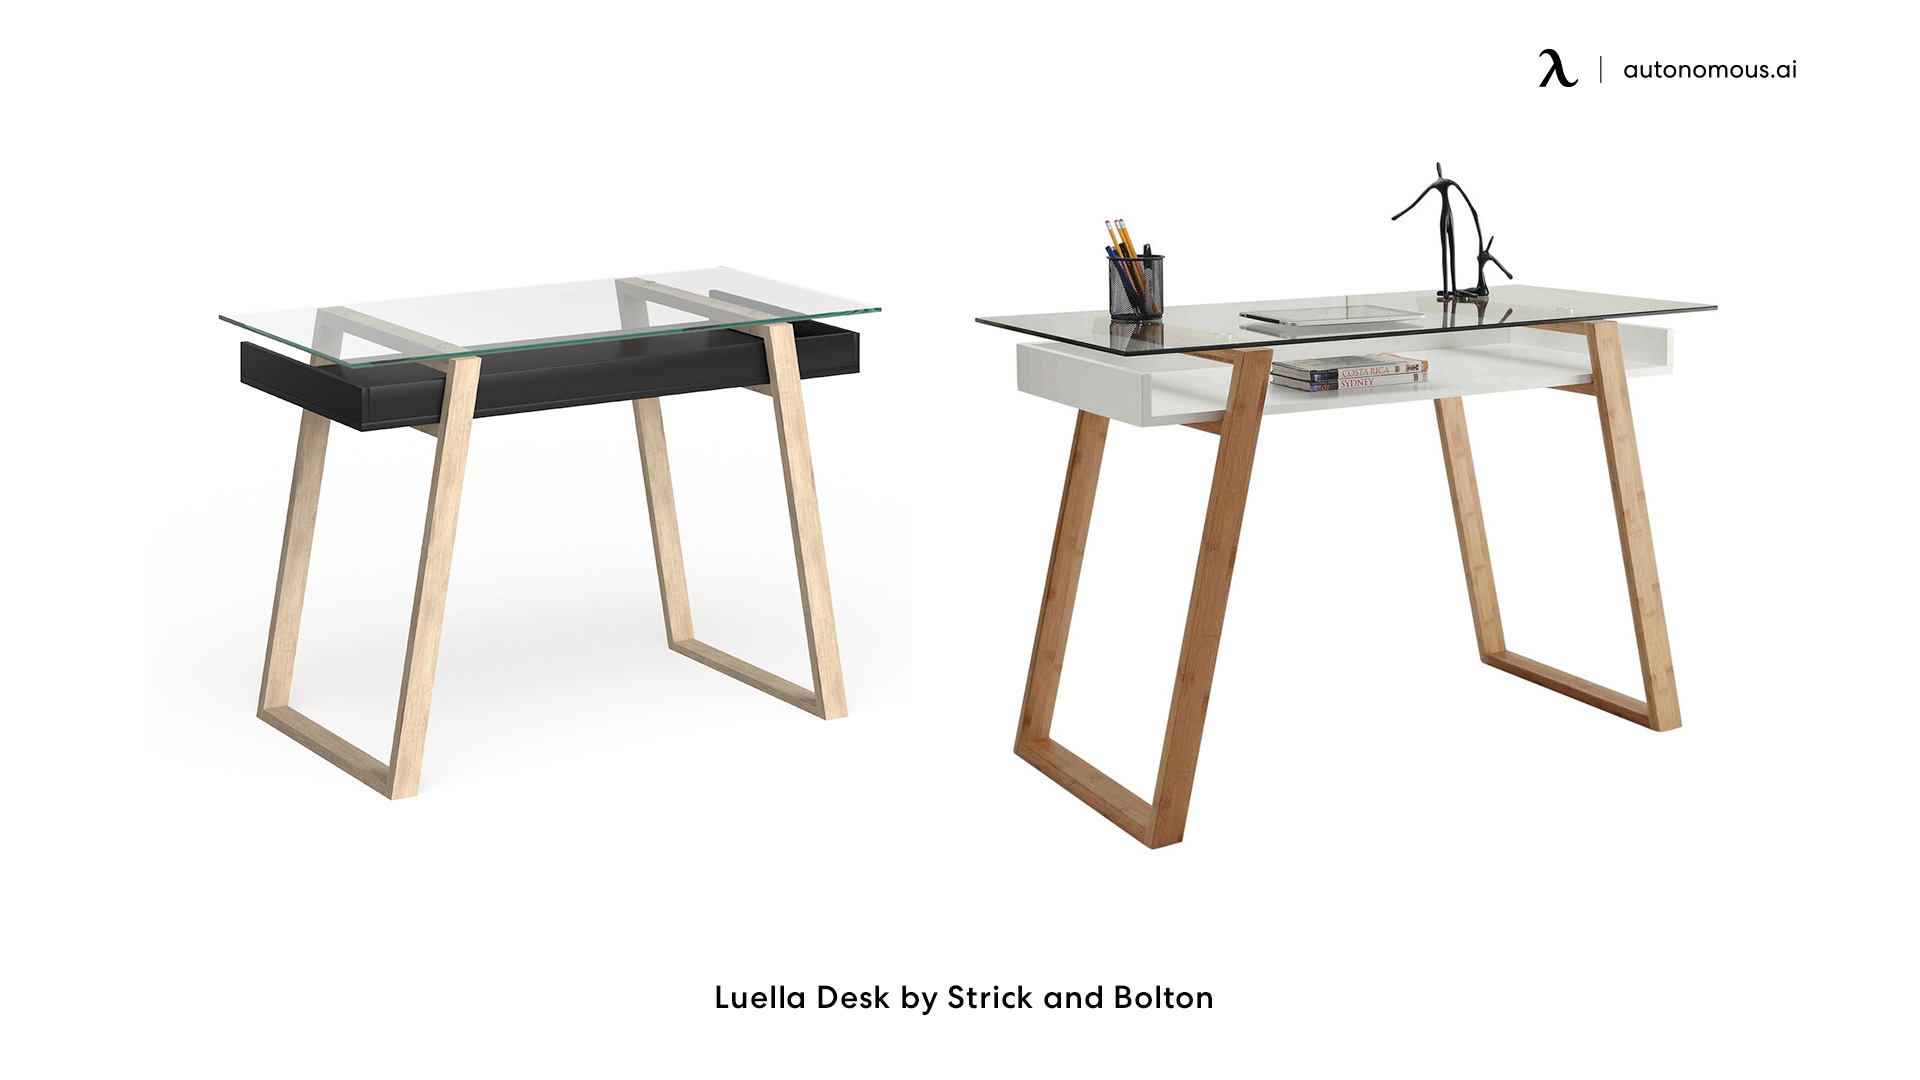 Luella Desk by Strick and Bolton